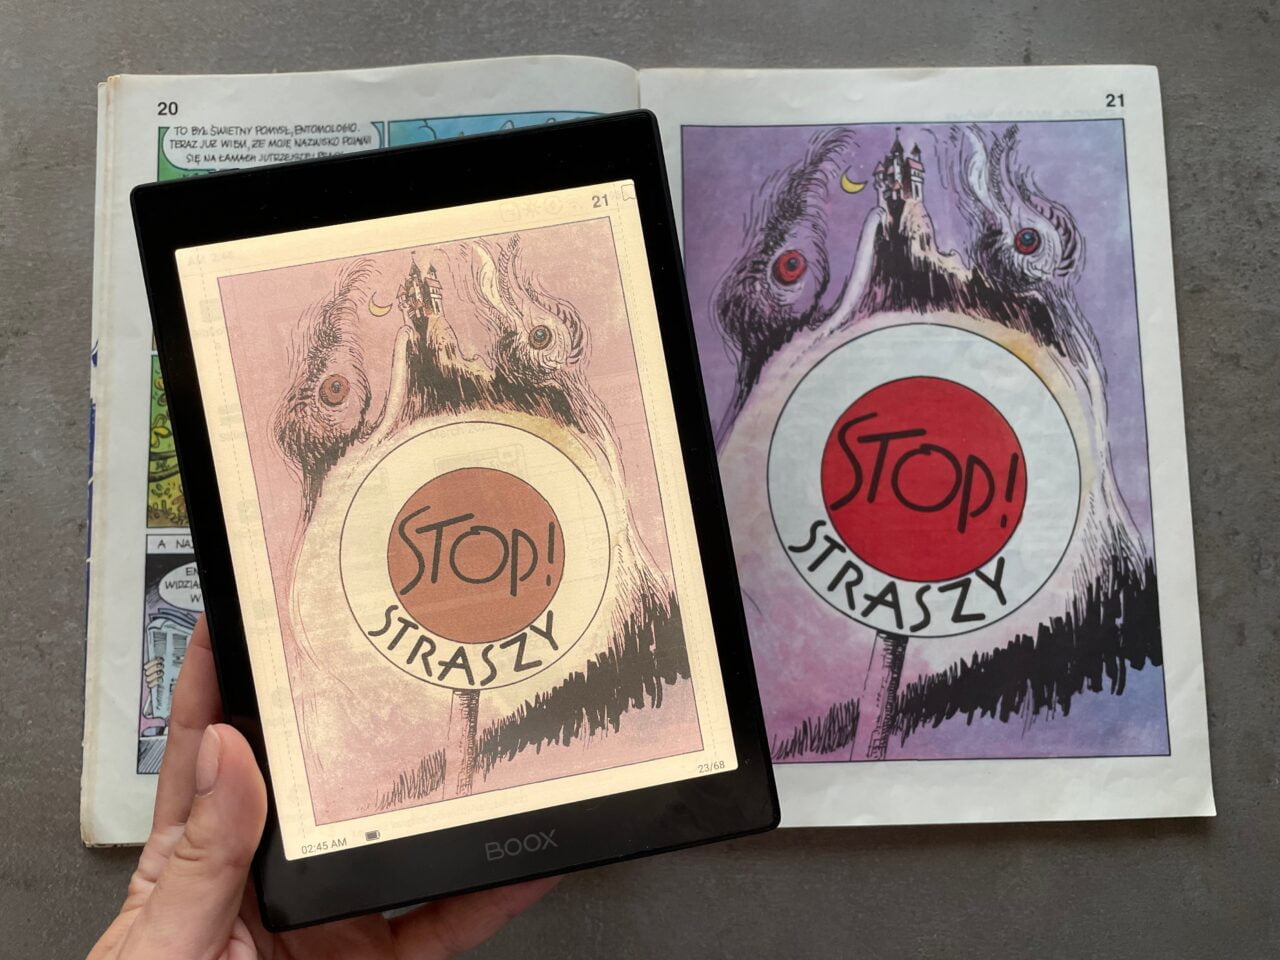 Osoba trzyma otwartą książkę z ilustracjami przedstawiającymi stylizowane potwory z napisami "STOP! STRASZY". Jedna strona jest wyświetlana na elektronicznym czytniku, a druga znajduje się w tradycyjnej książce.